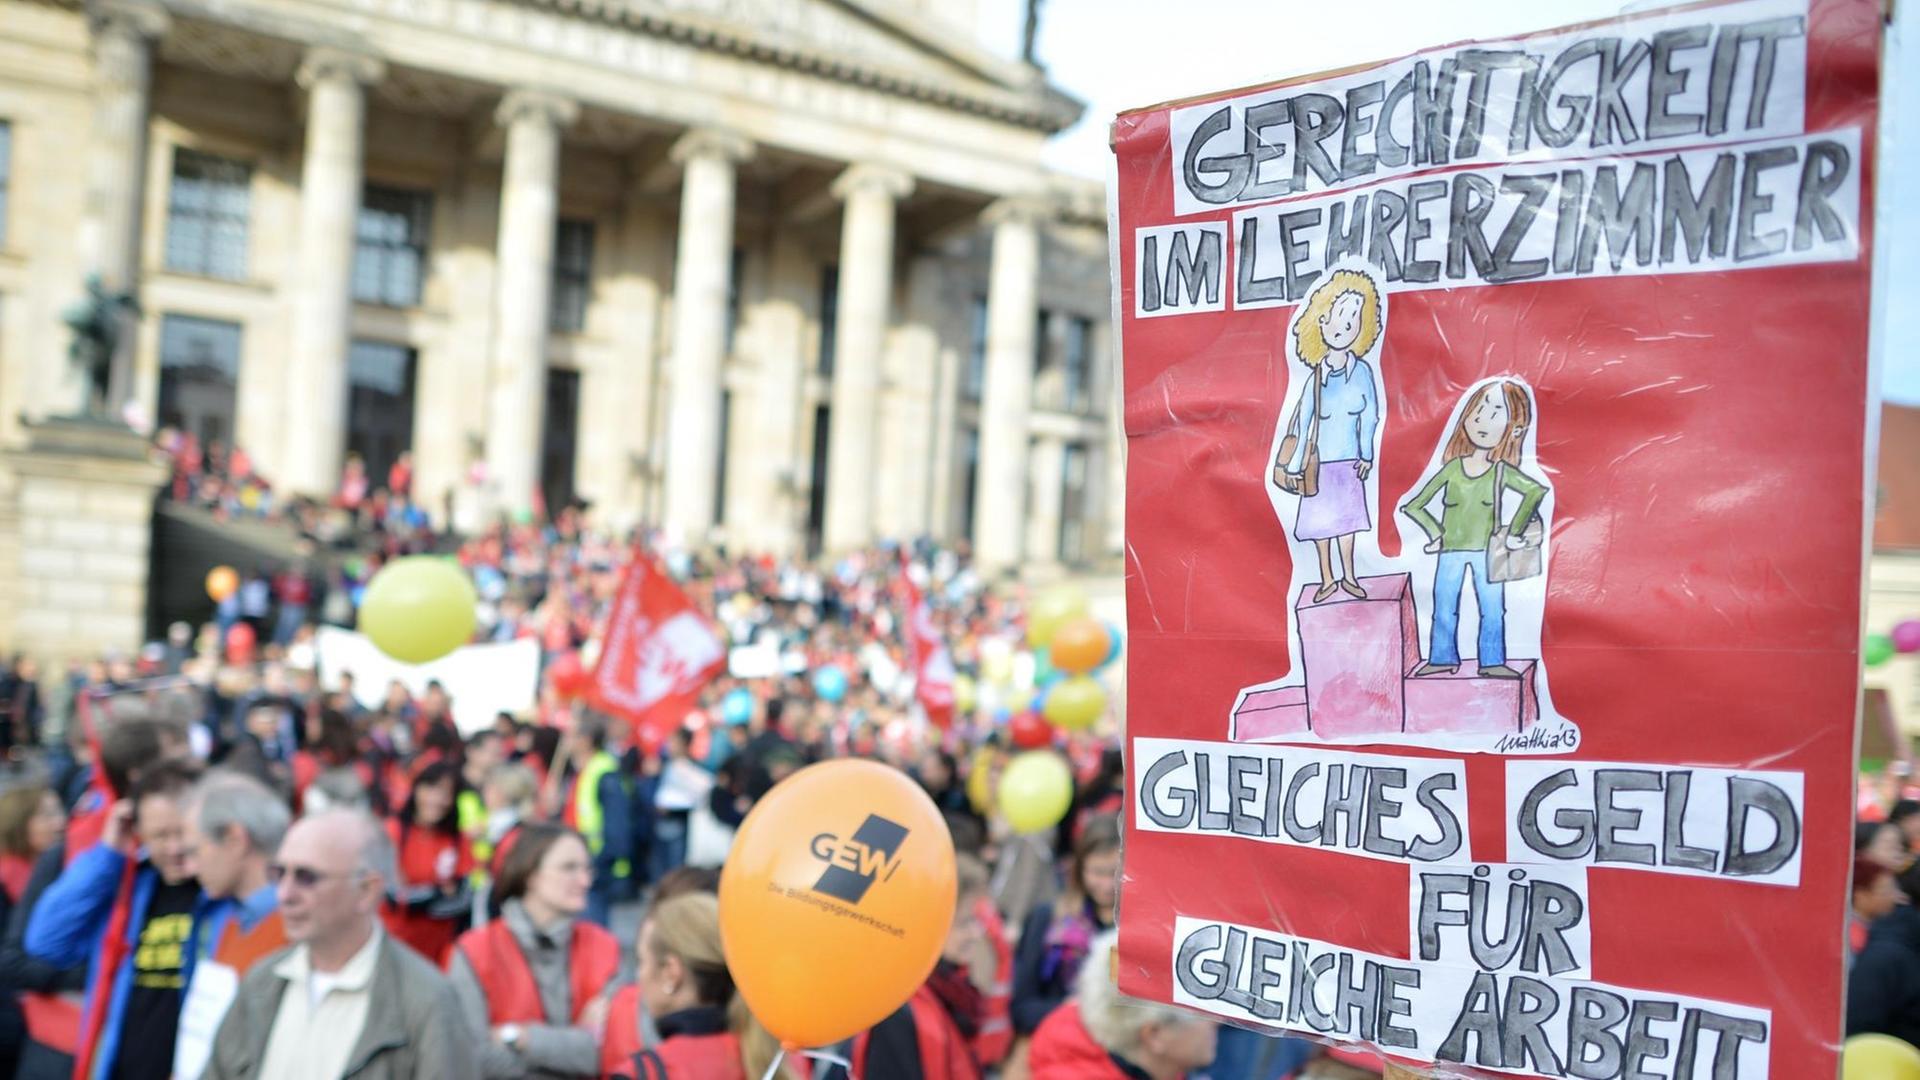 Auf einer Demonstration vor dem Berliner Reichstag ist ein Plakat mit der Aufschrift "Gerechtigkeit im Lehrerzimmer" zu sehen.